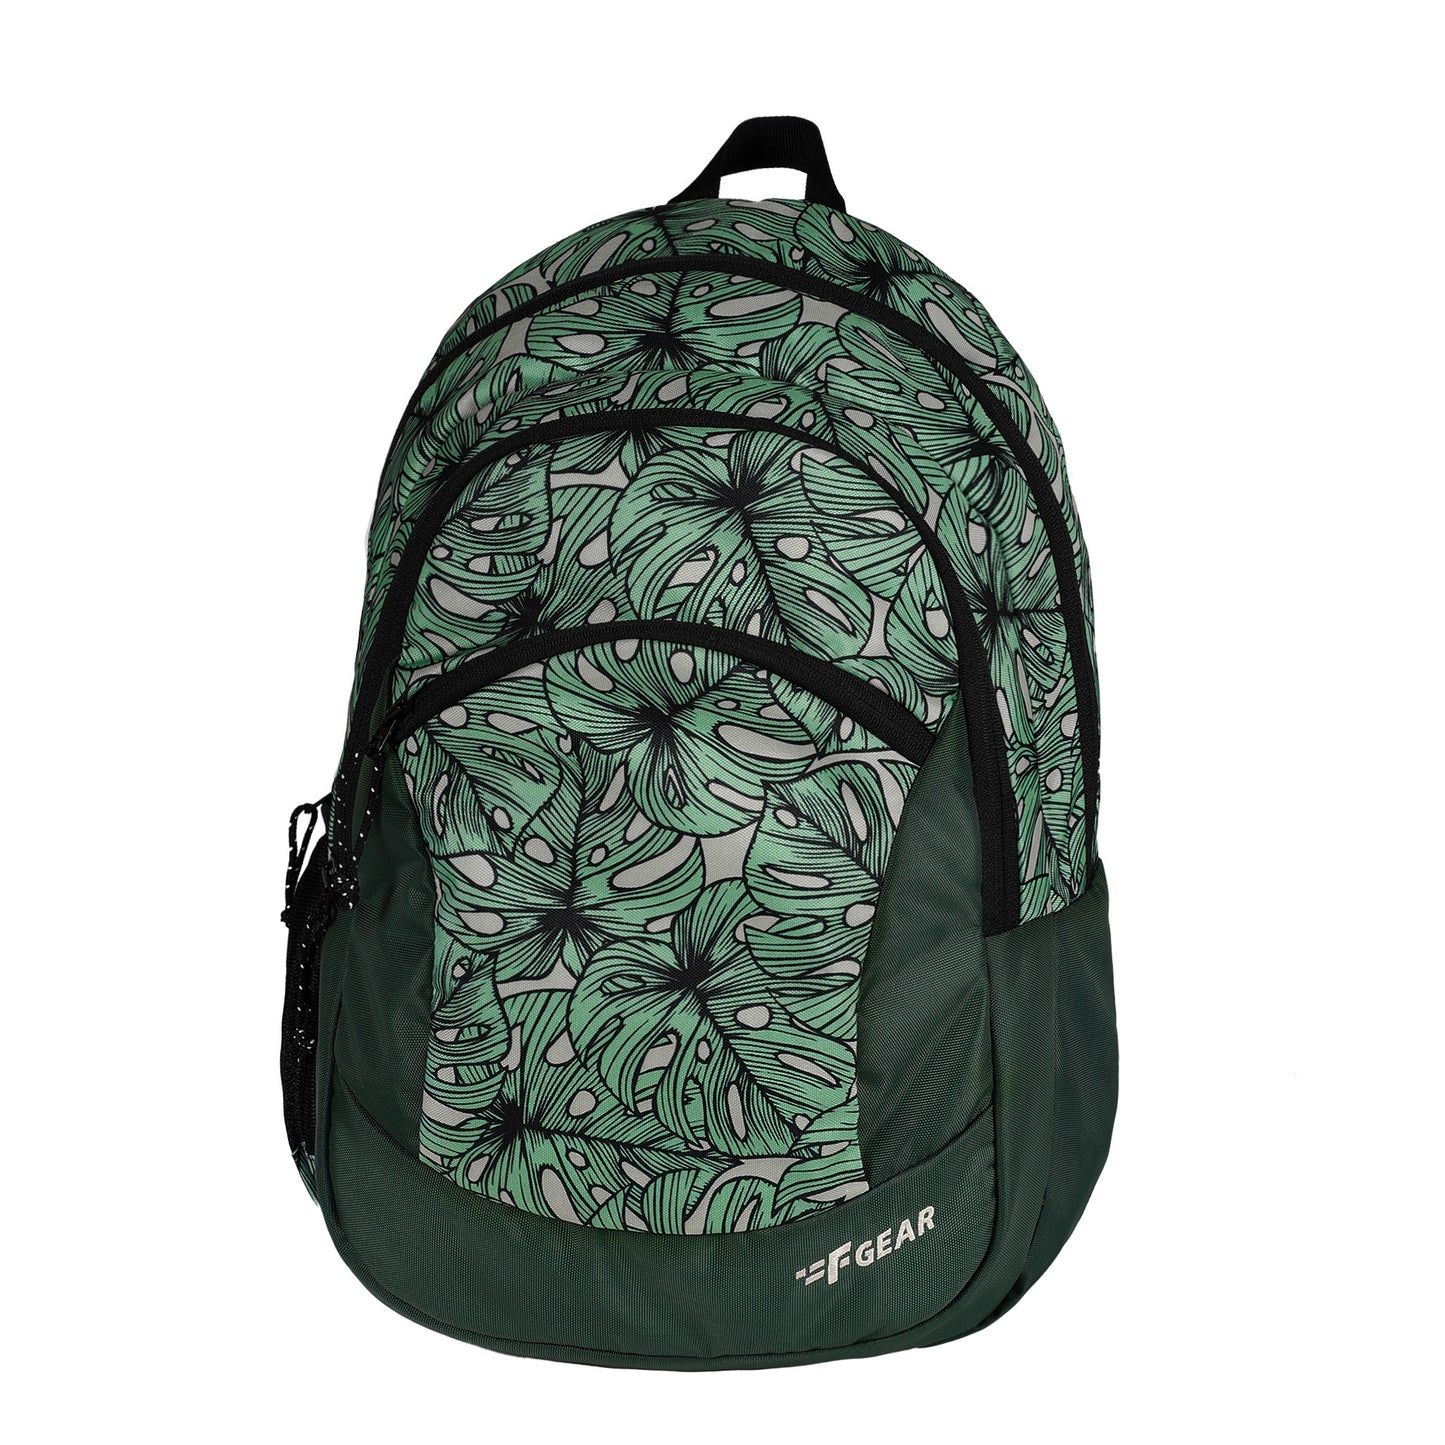 Nico 17L Palm Green Black Backpack